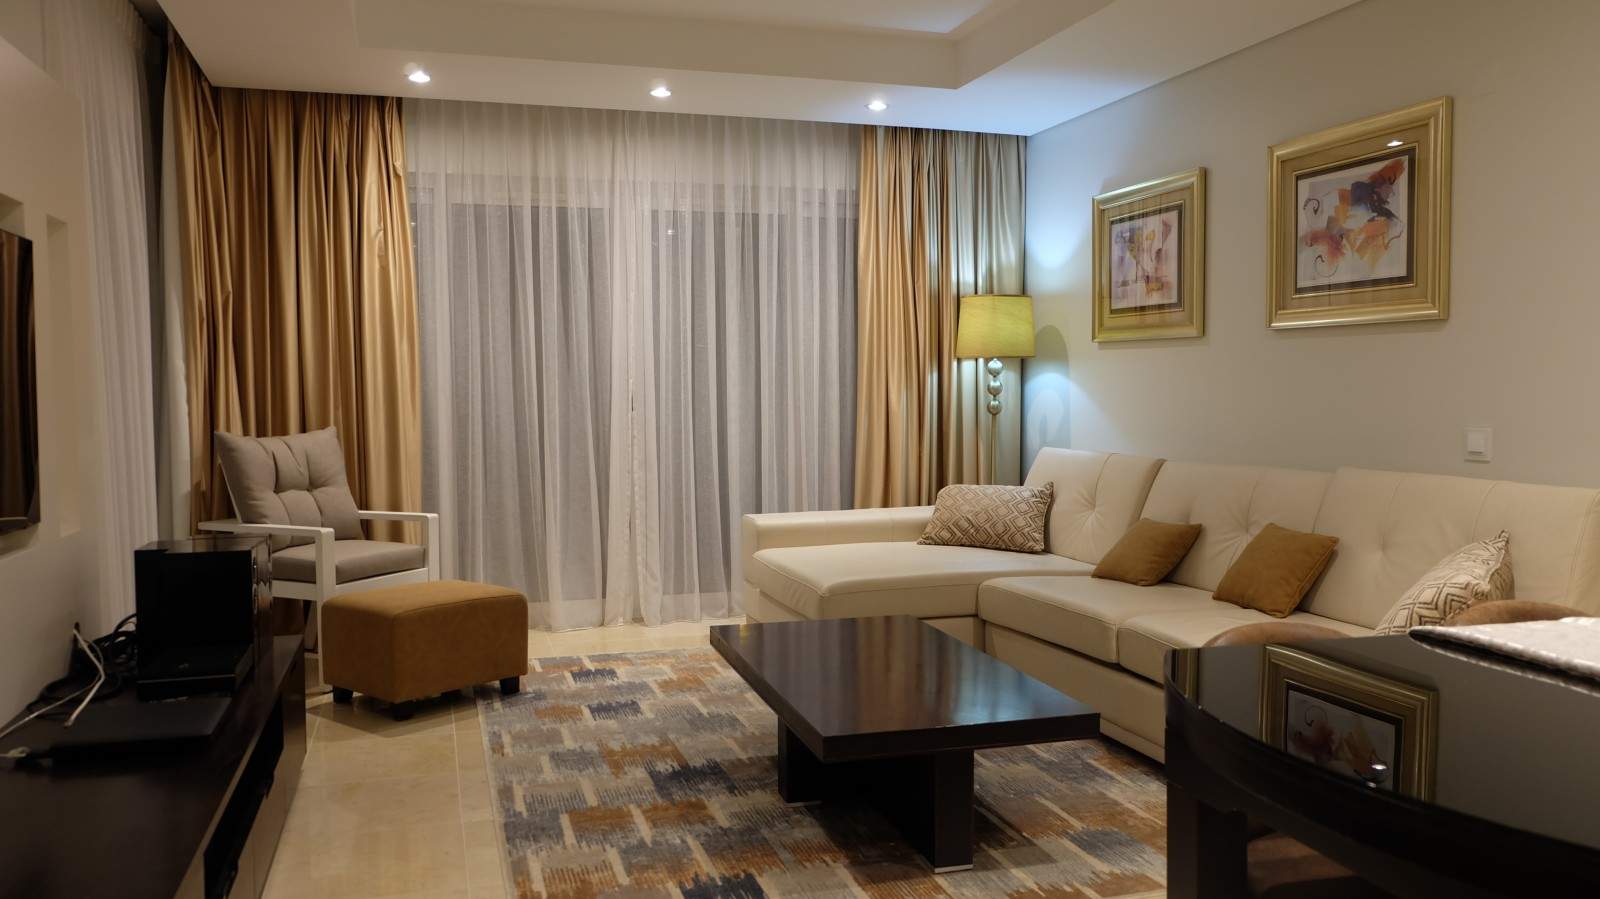 1 Bedroom Apartment in Luxury Resort for sale, in Vilamoura, Algarve_213632